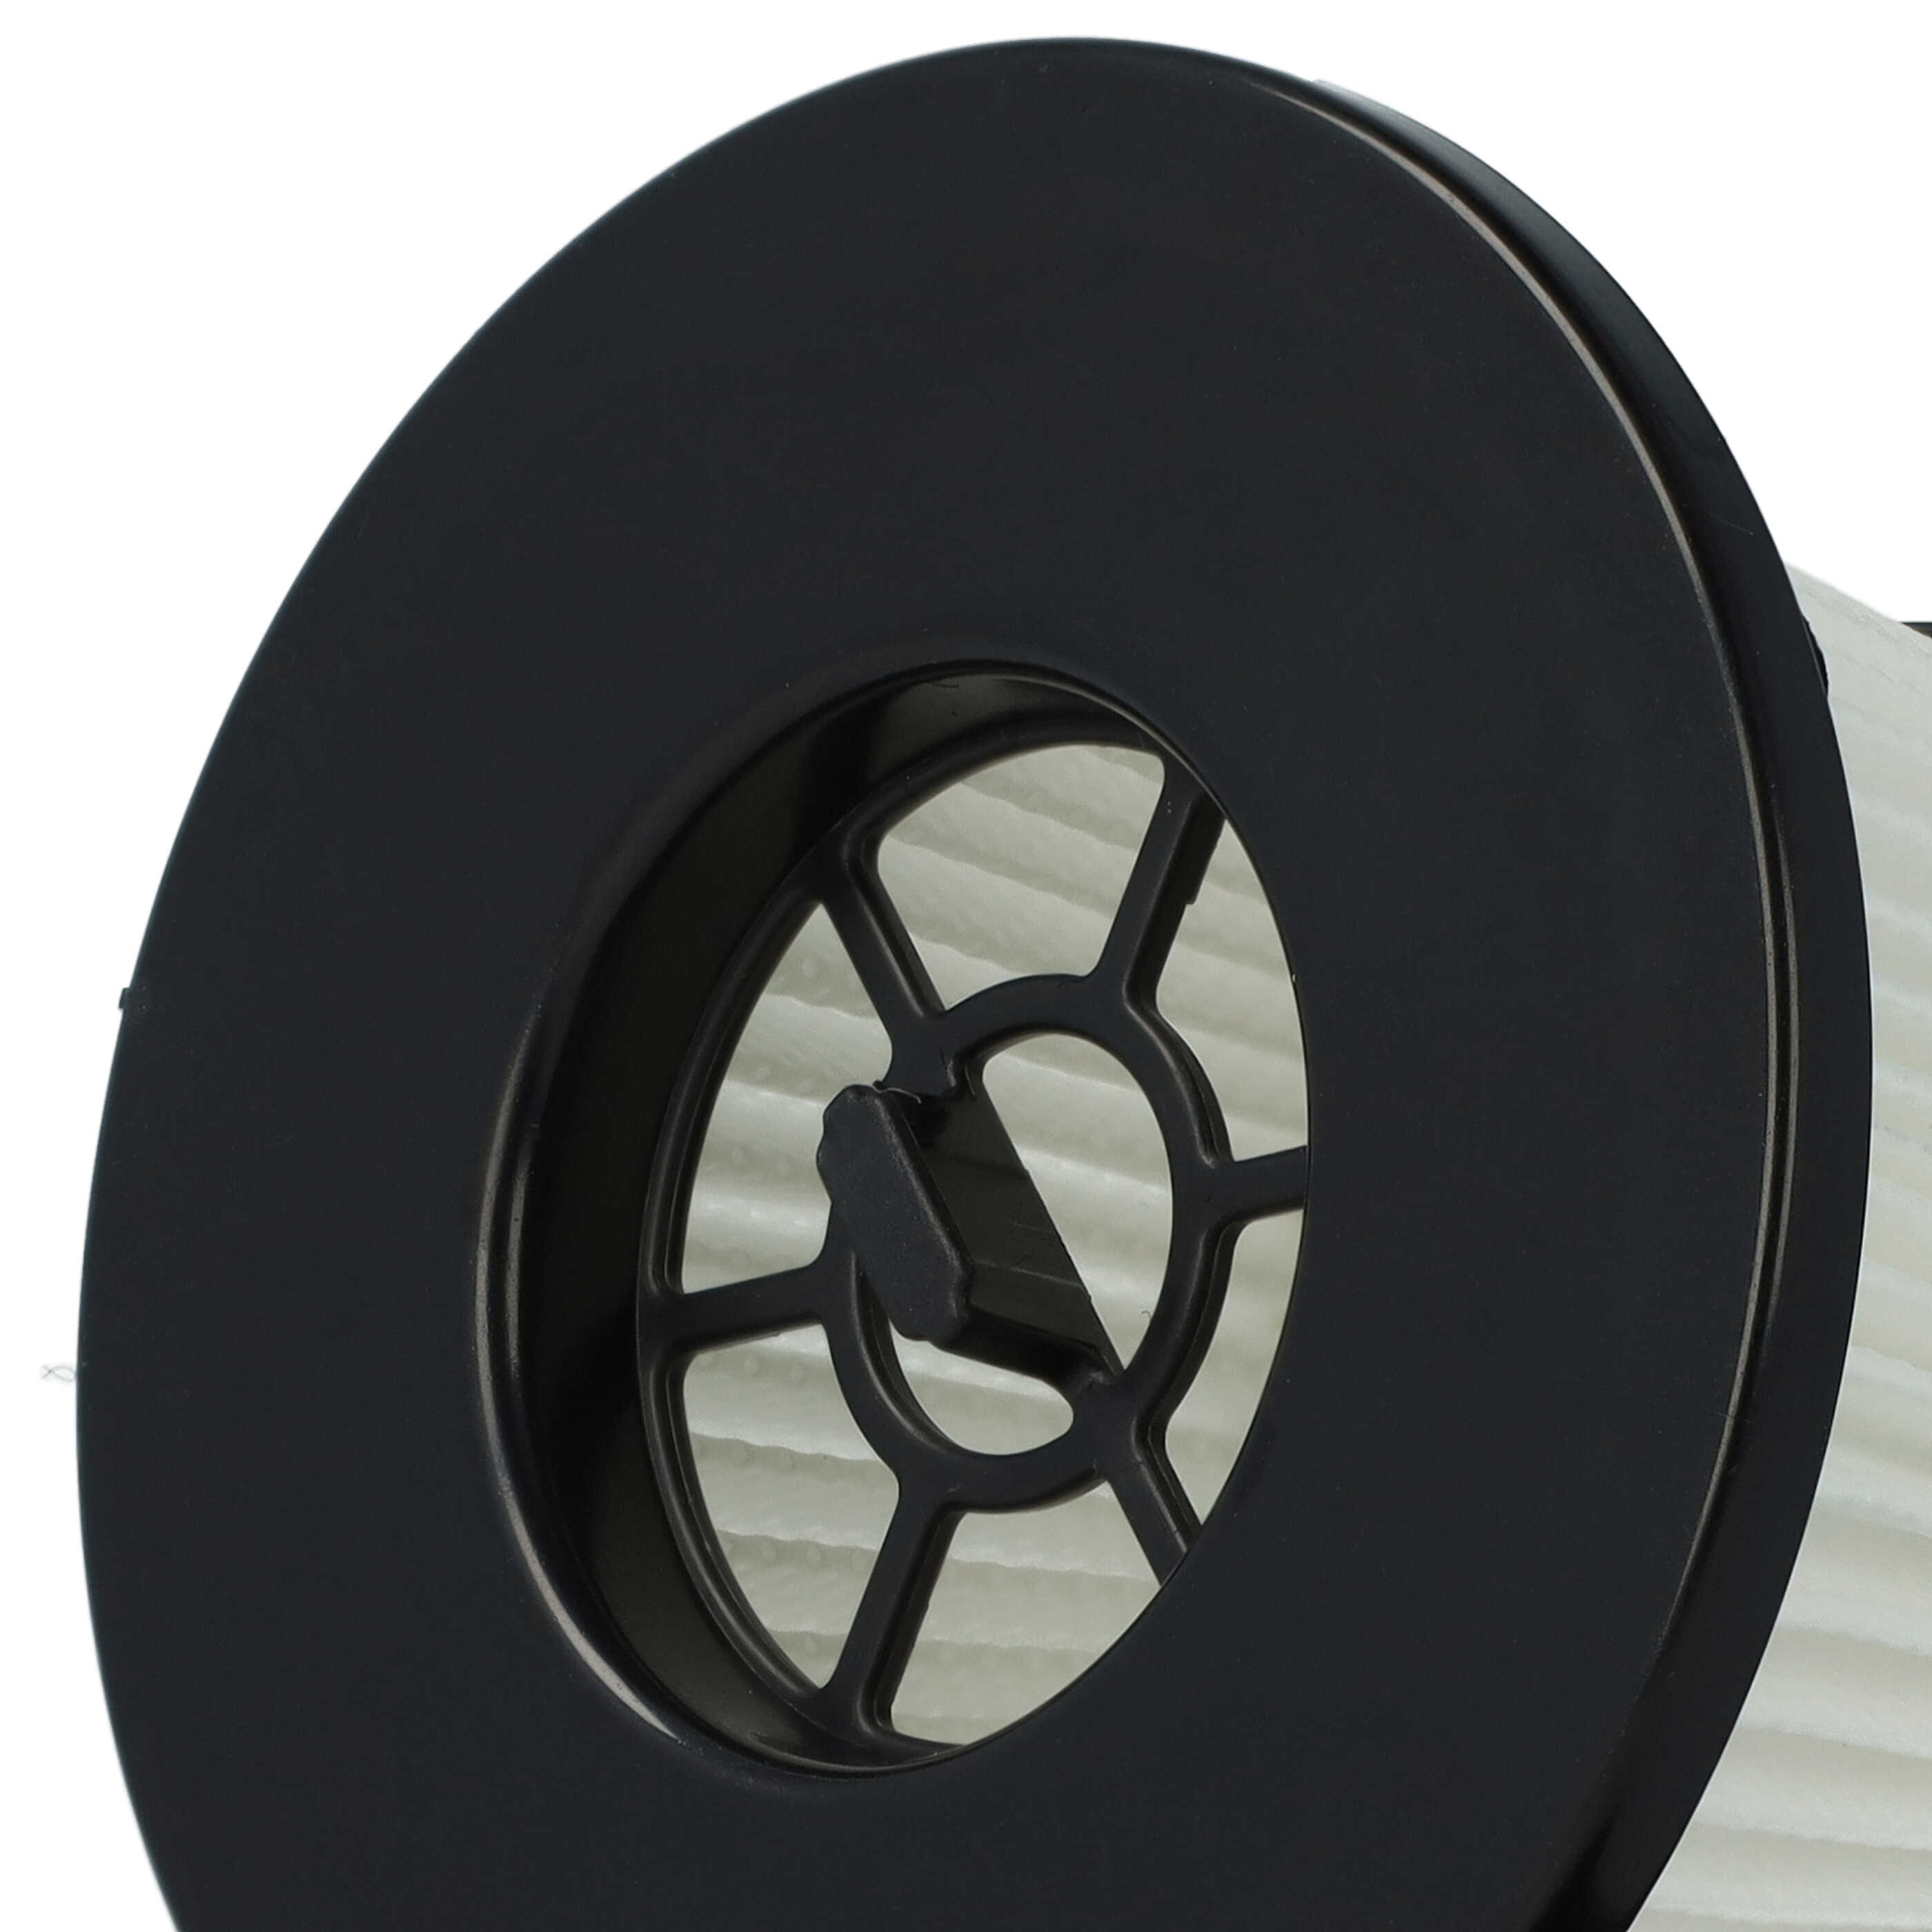 2x Filtro para aspiradora Moosoo K24 - filtro Hepa negro / blanco